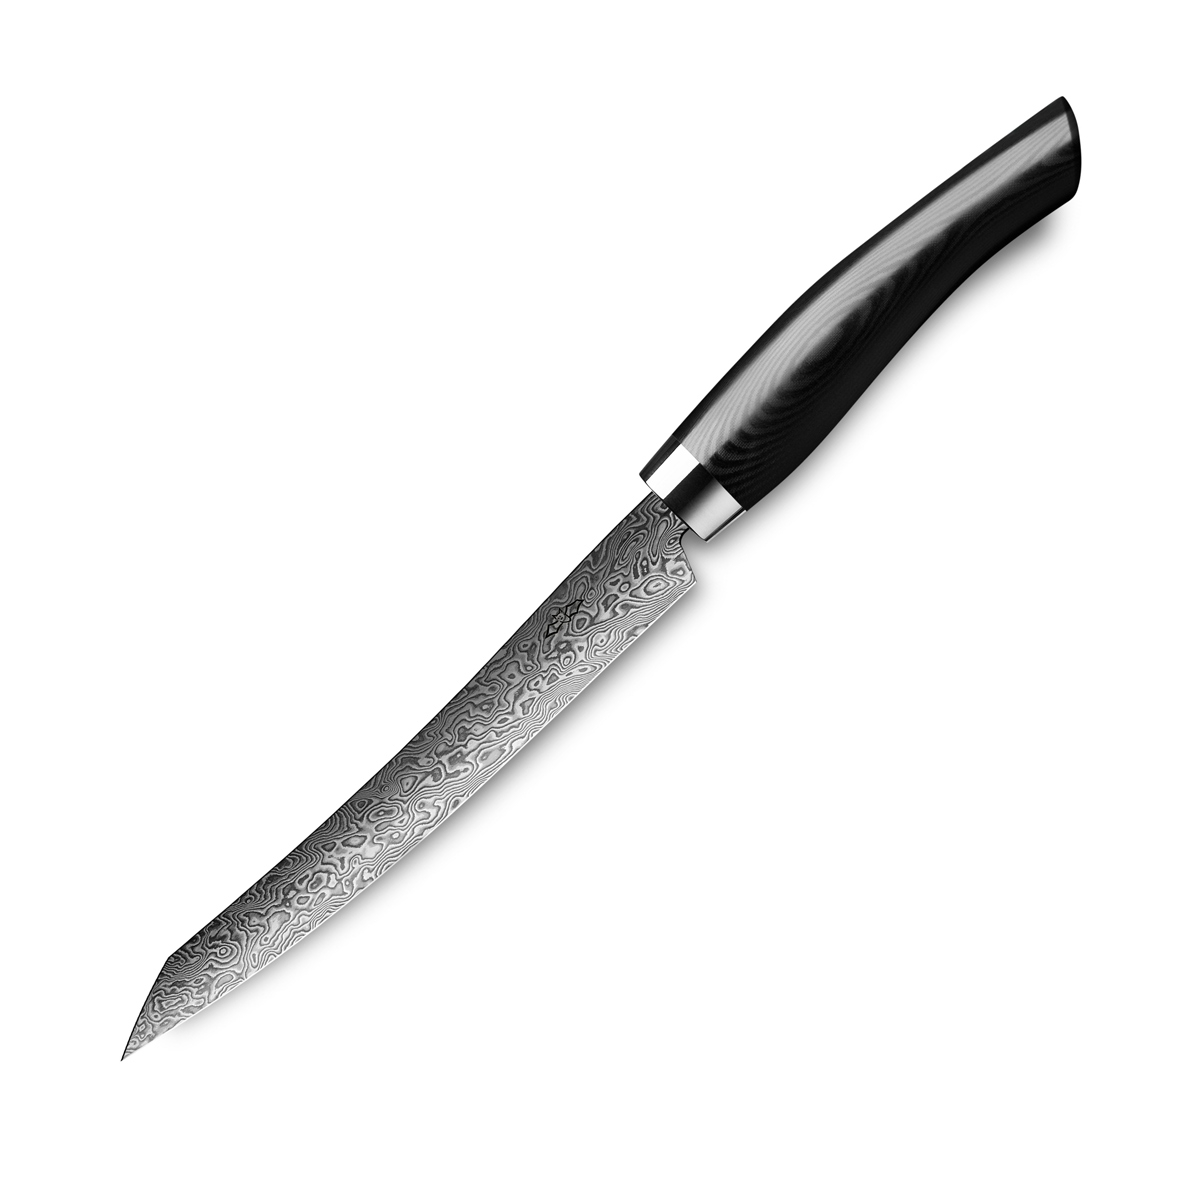 Nesmuk Exklusiv C90 Damast Slicer 16 cm / Griff aus schwarzem Micarta